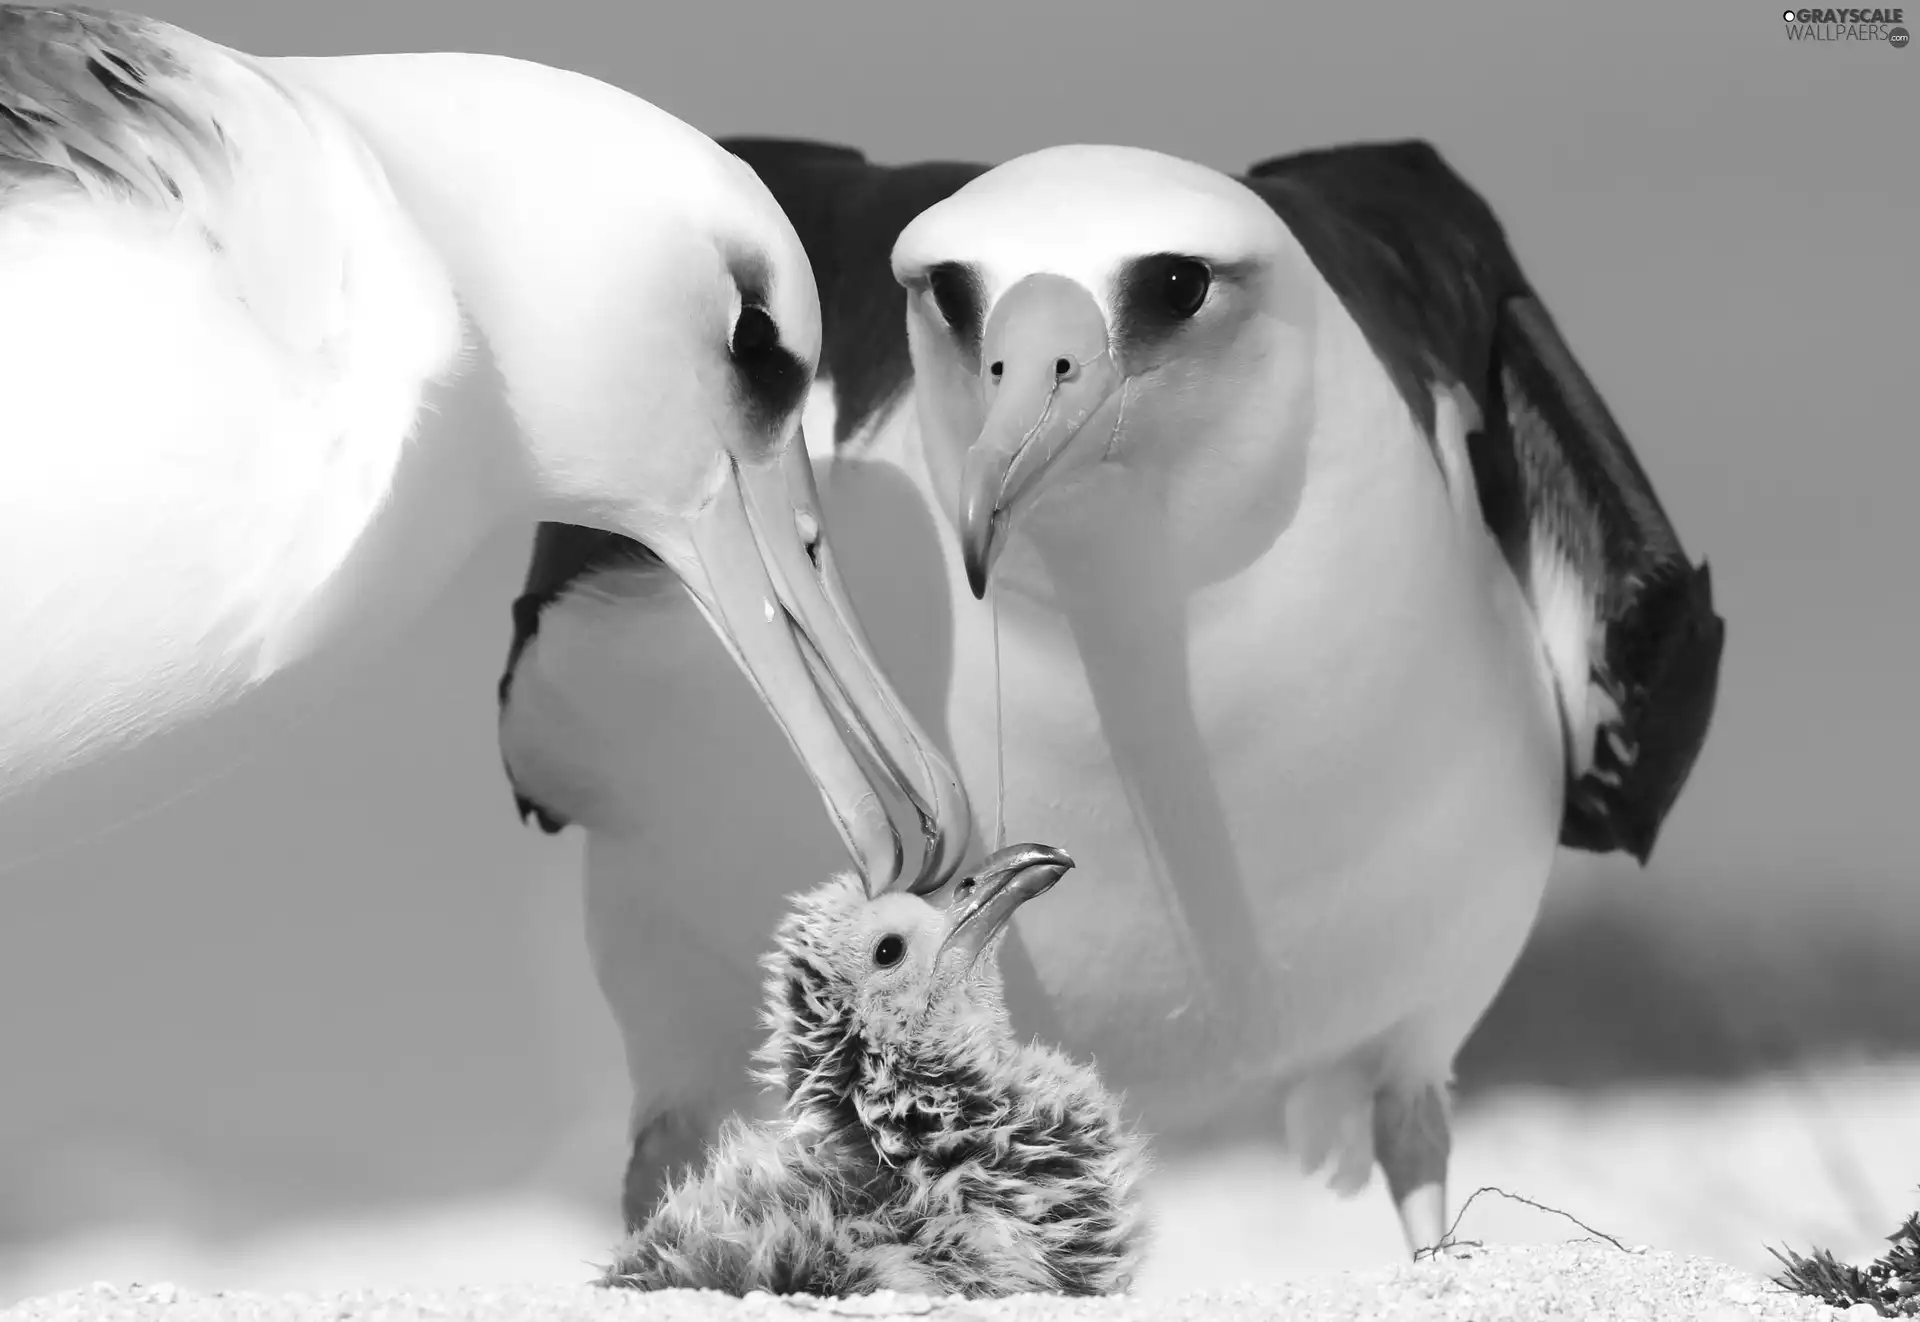 albatrosses, folks